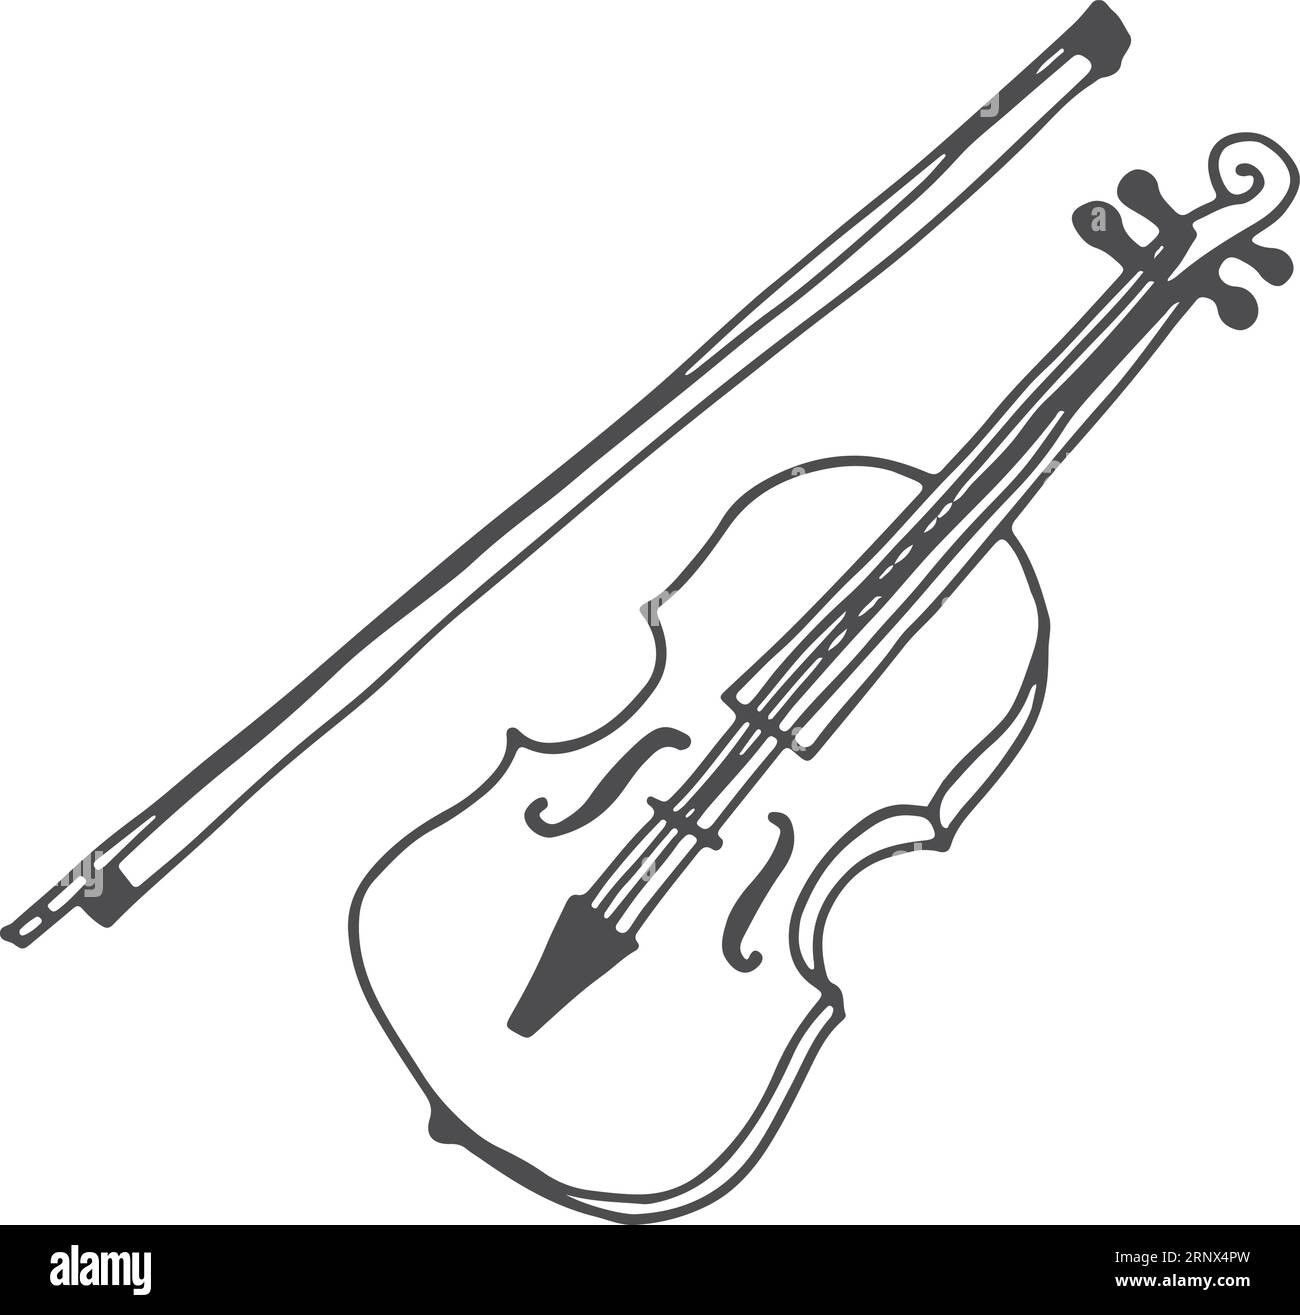 Dessin au violon. Icône de musique classique dessinée à la main Illustration de Vecteur